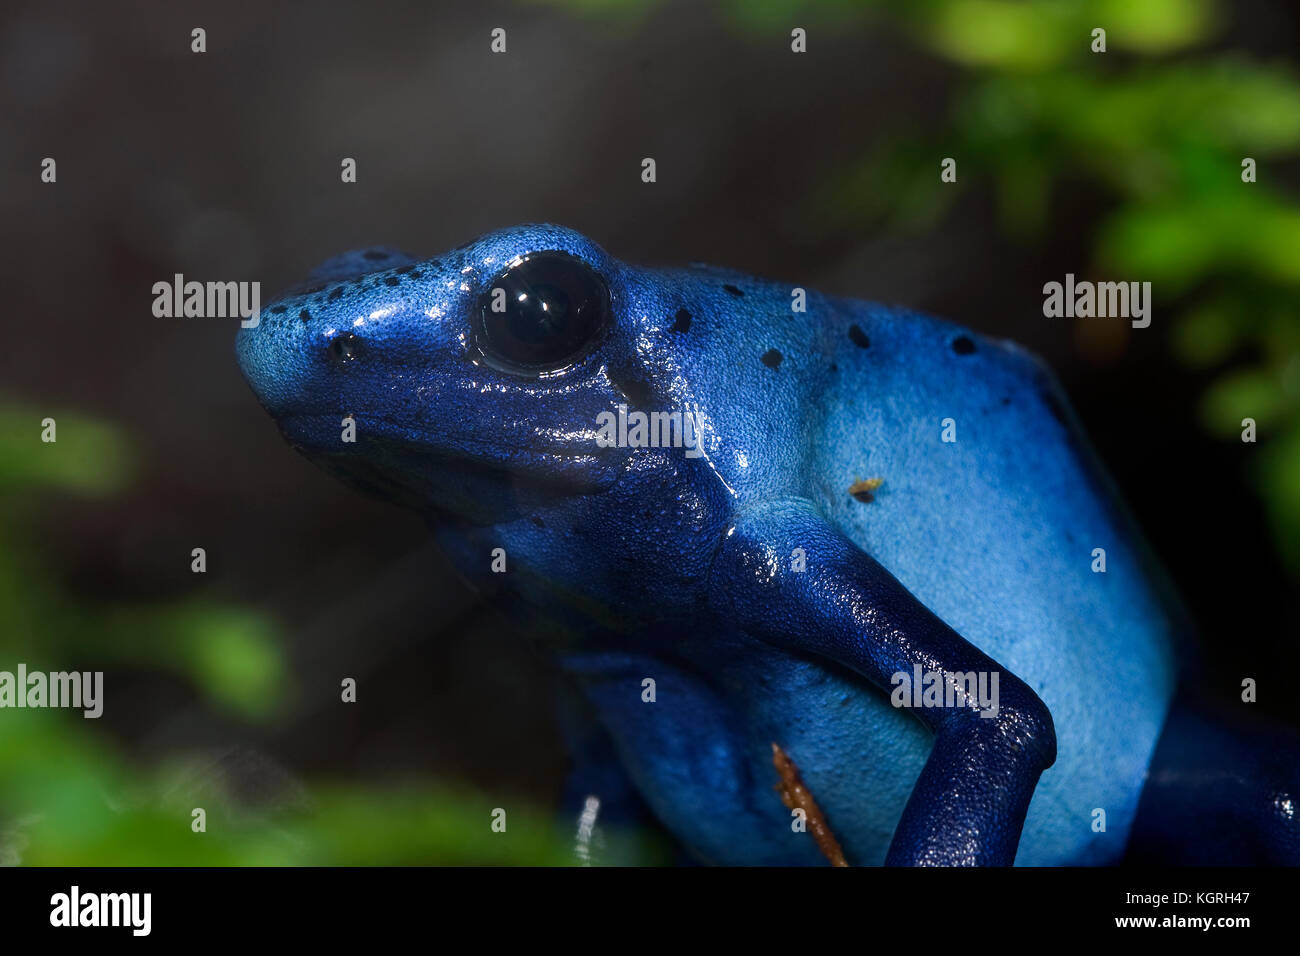 Blue Poison Dart Frog, Dendrobates azureus Stock Photo